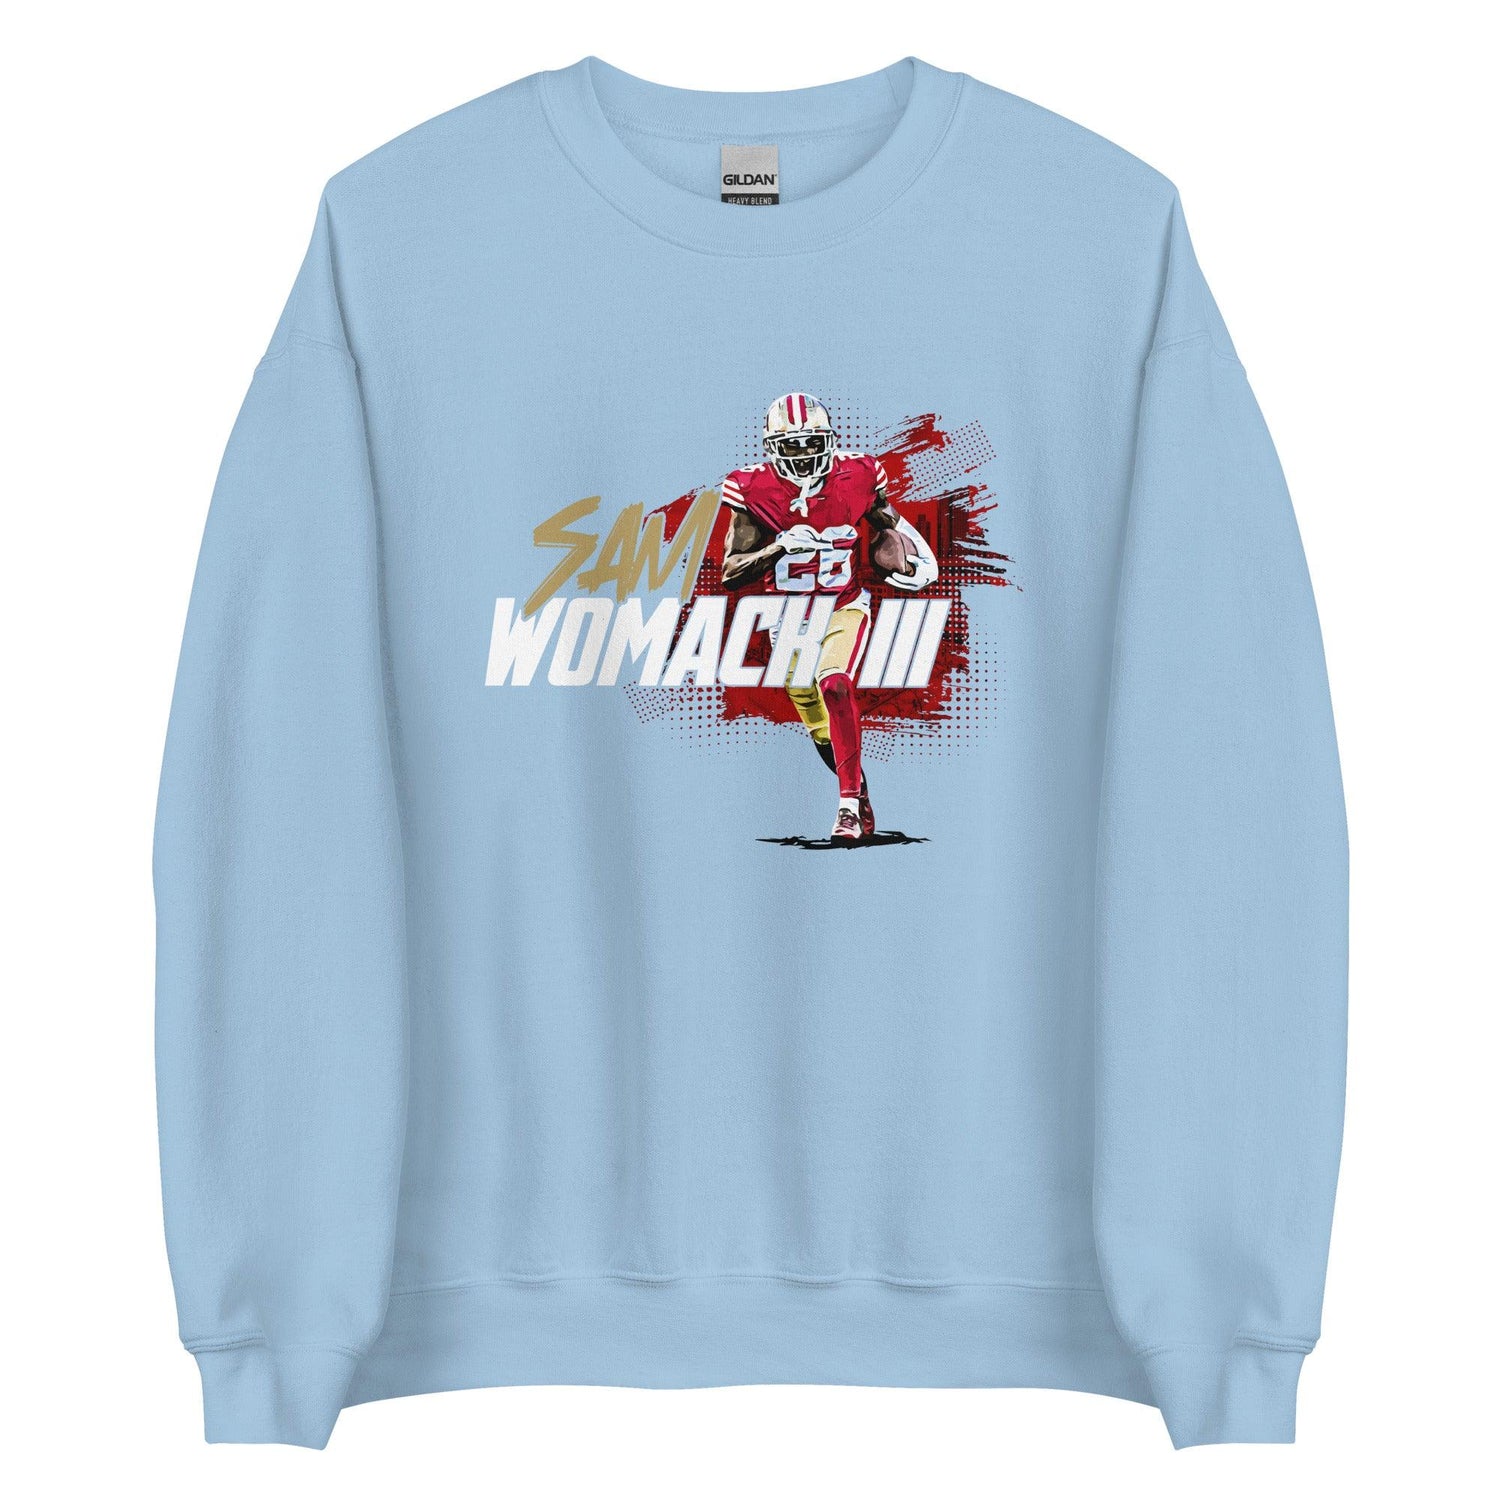 Samuel Womack "Gameday" Sweatshirt - Fan Arch